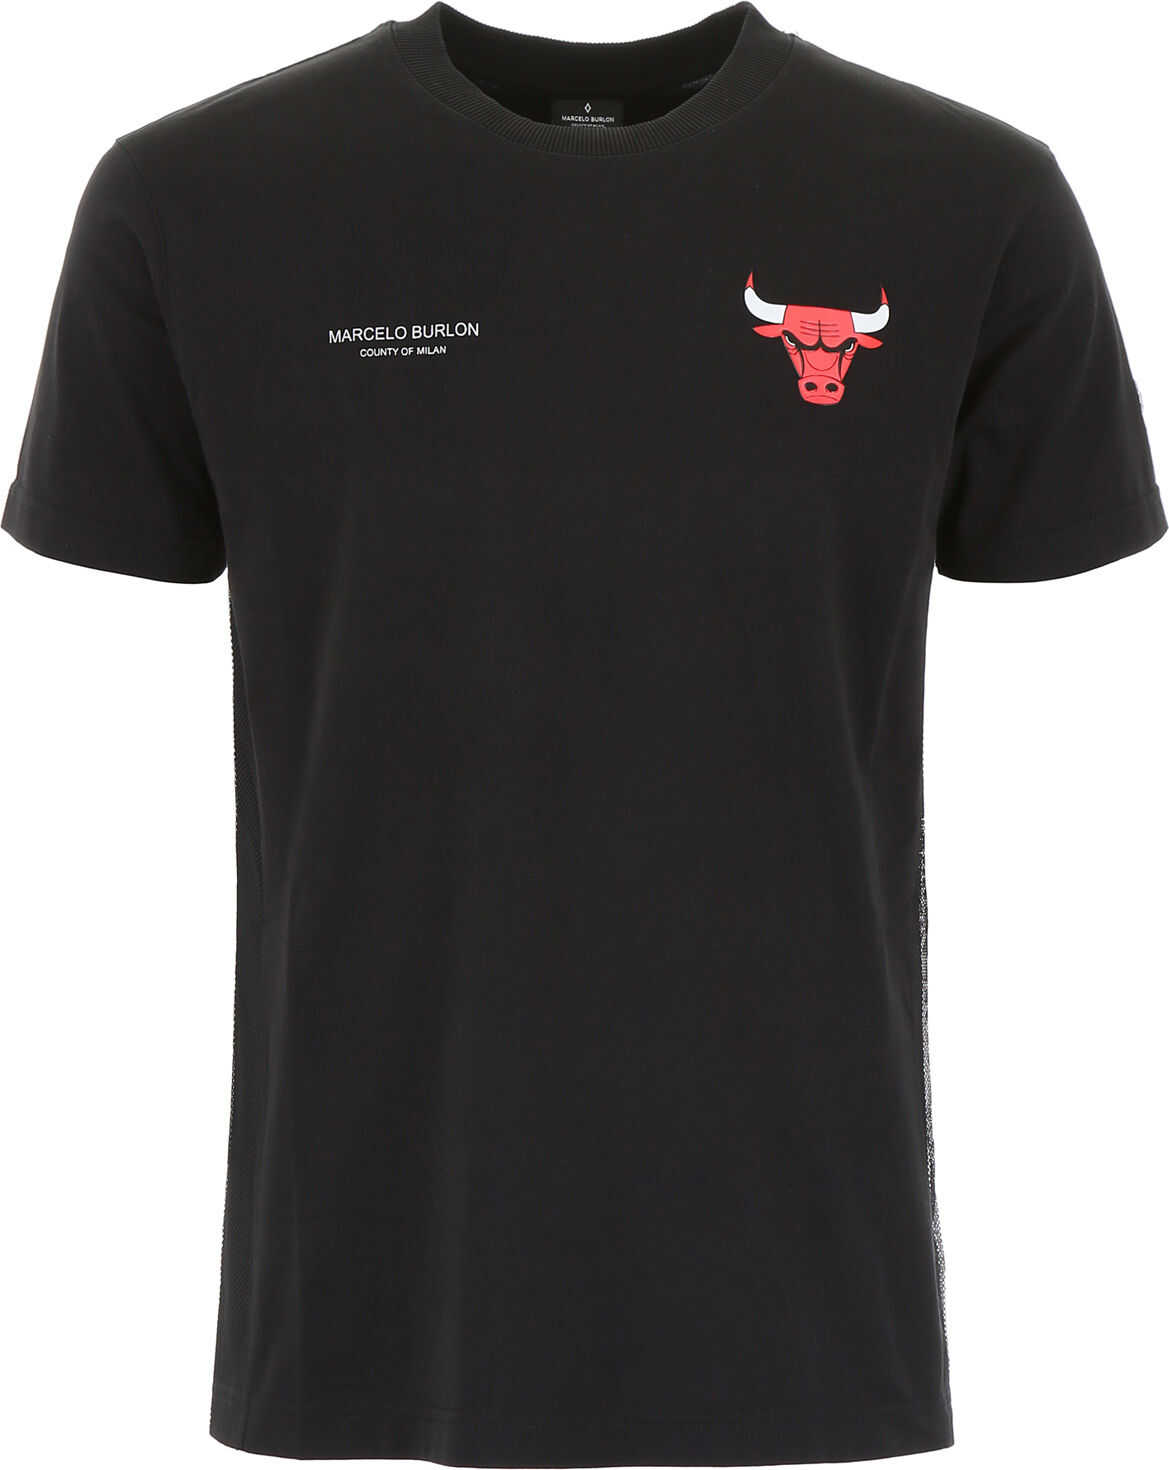 Marcelo Burlon Chicago Bulls T-Shirt BLACK MULTI